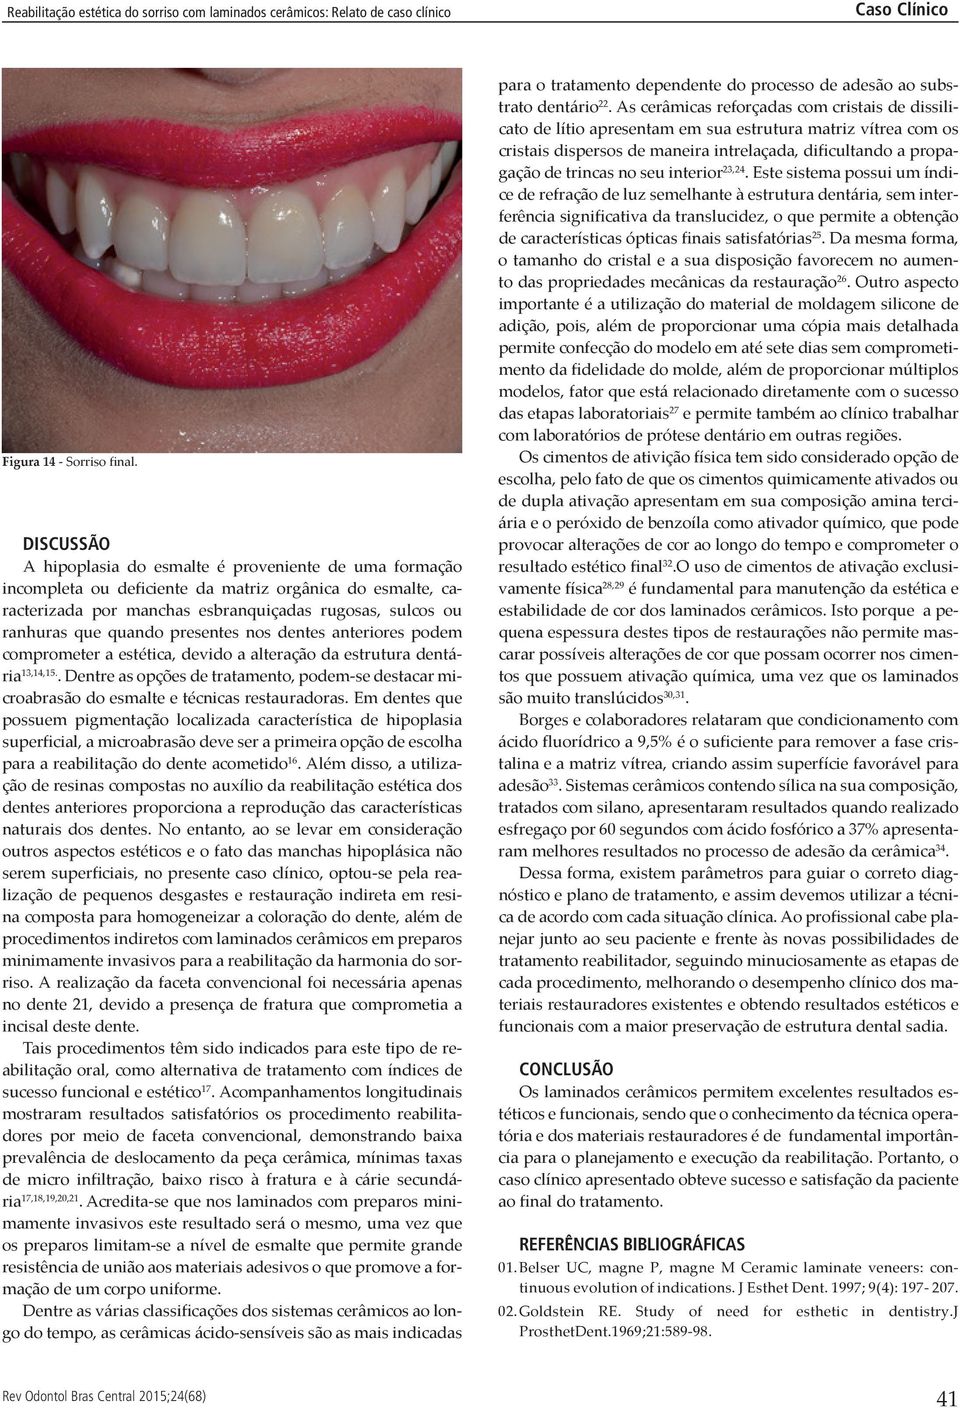 presentes nos den tes anteriores podem comprometer a estética, devido a alteração da estrutura dentária 13,14,15.